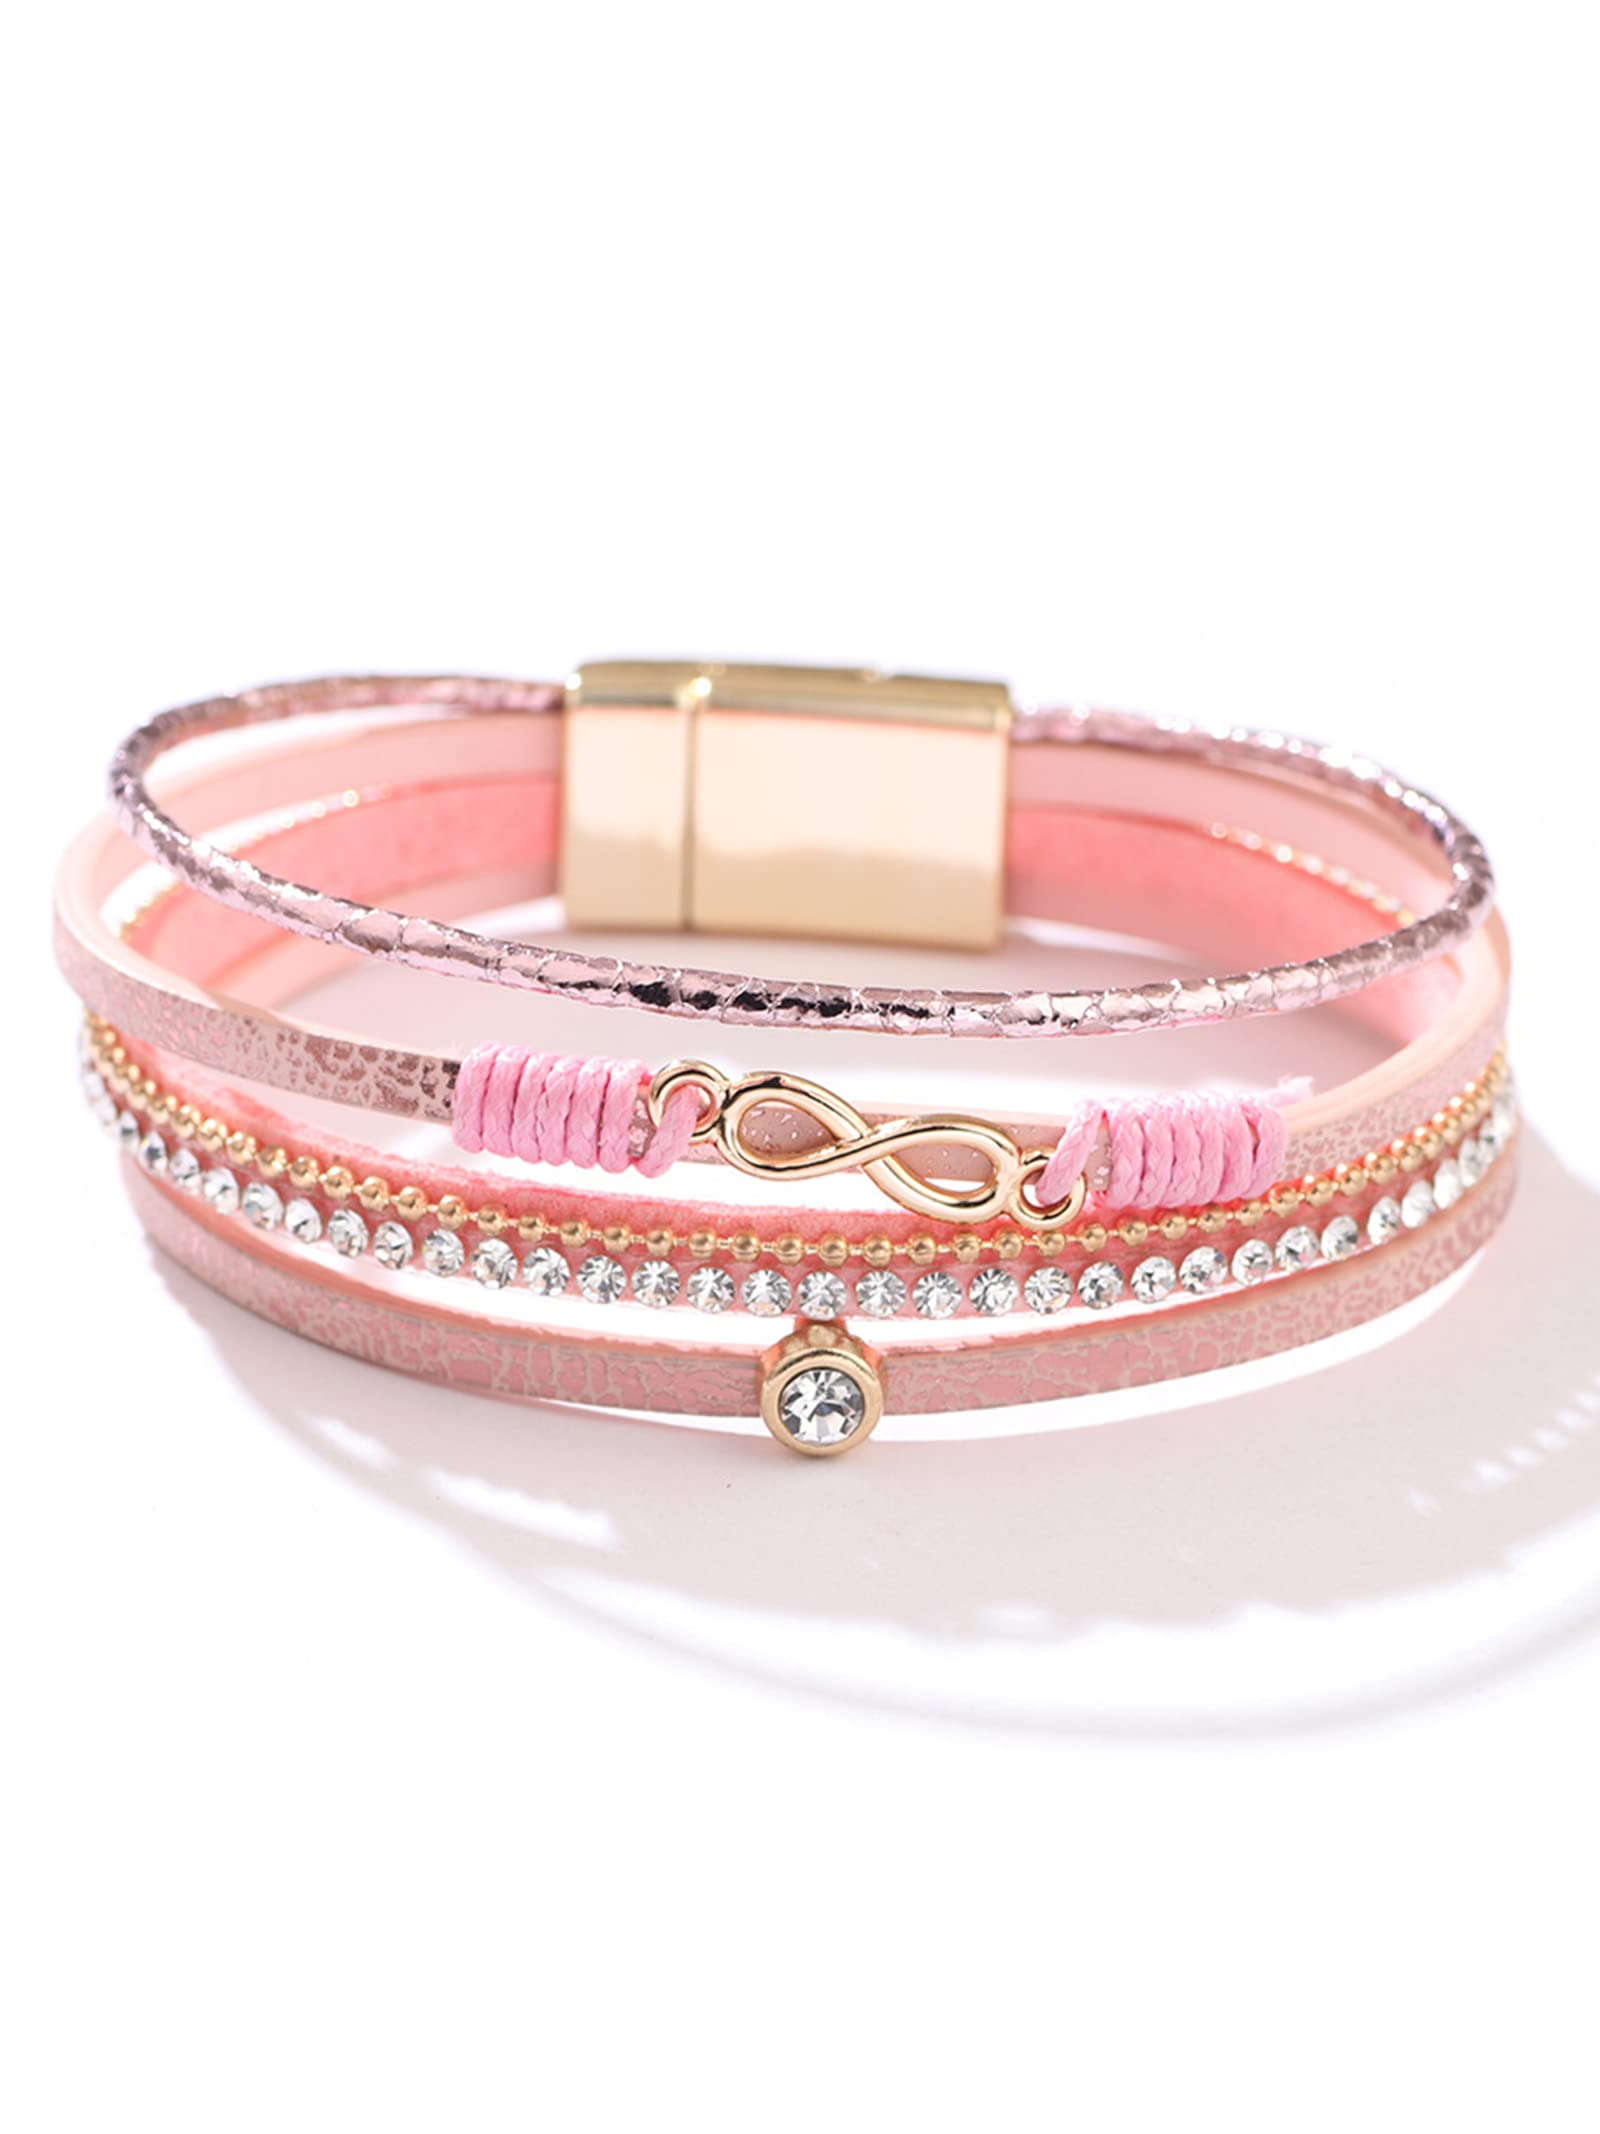 Brin d'Amour My Heart Fabric Bracelet – Stuff & All Ltd